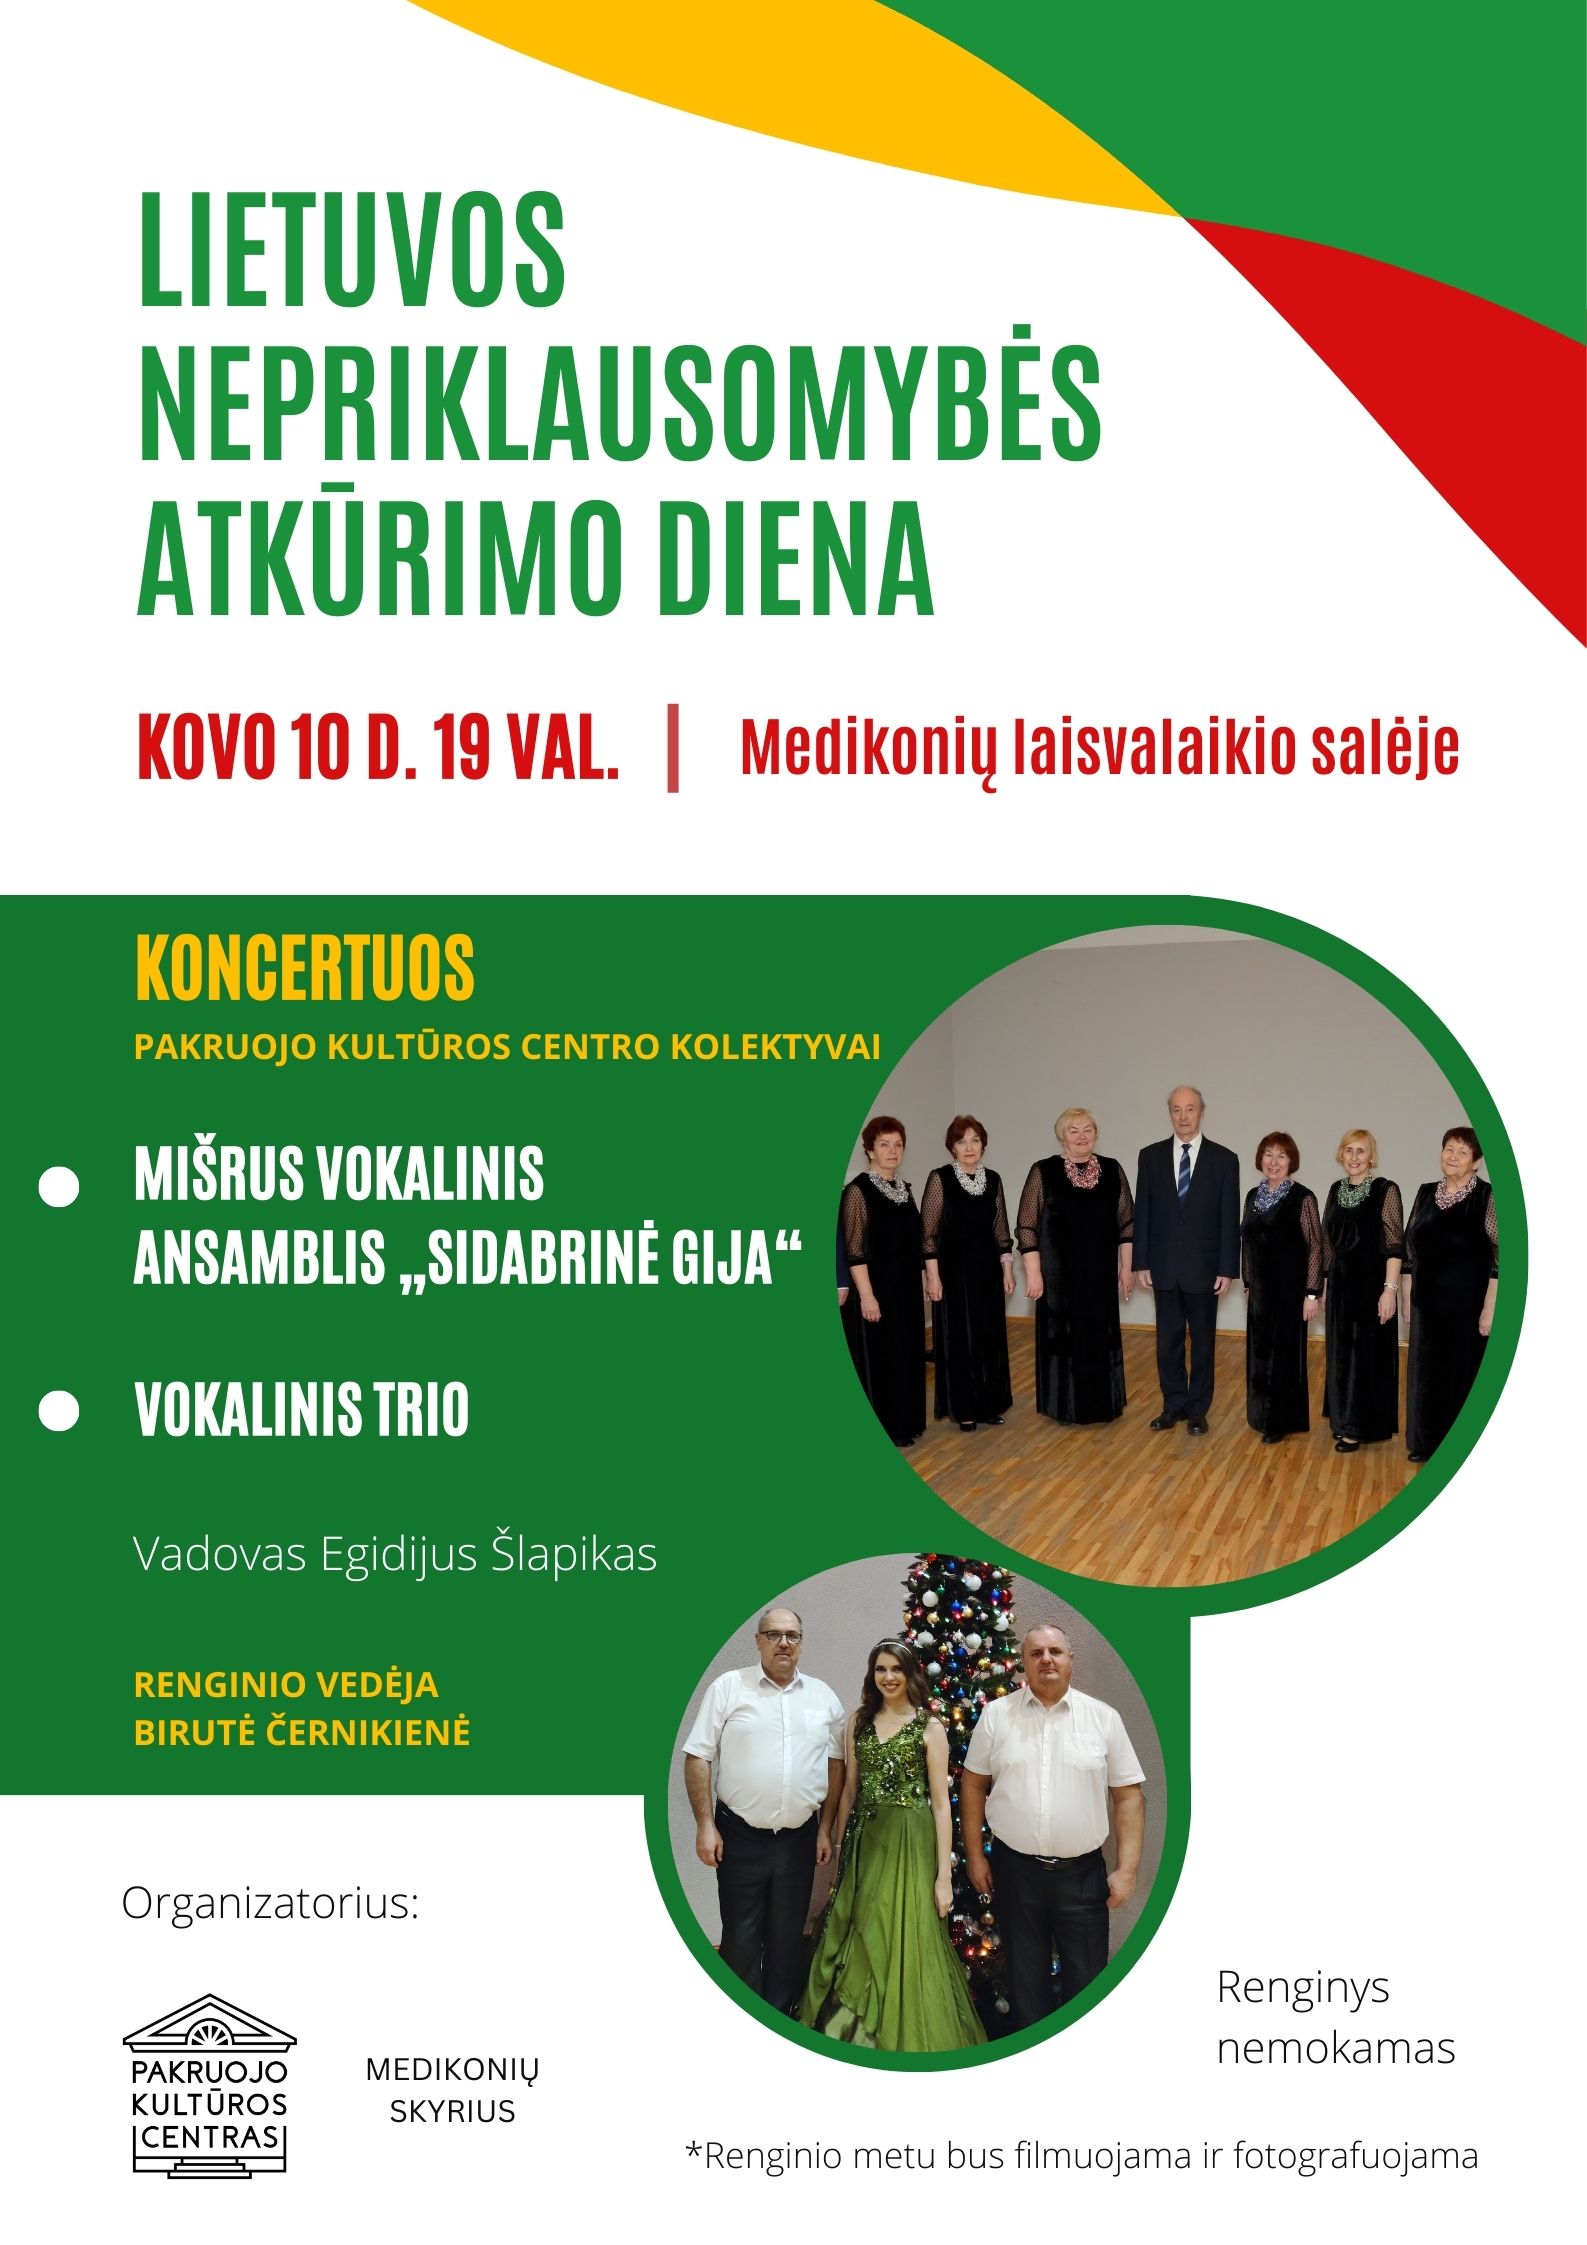 MEDIKONIAI: Lietuvos Nepriklausomybės atkūrimo dienos koncertas